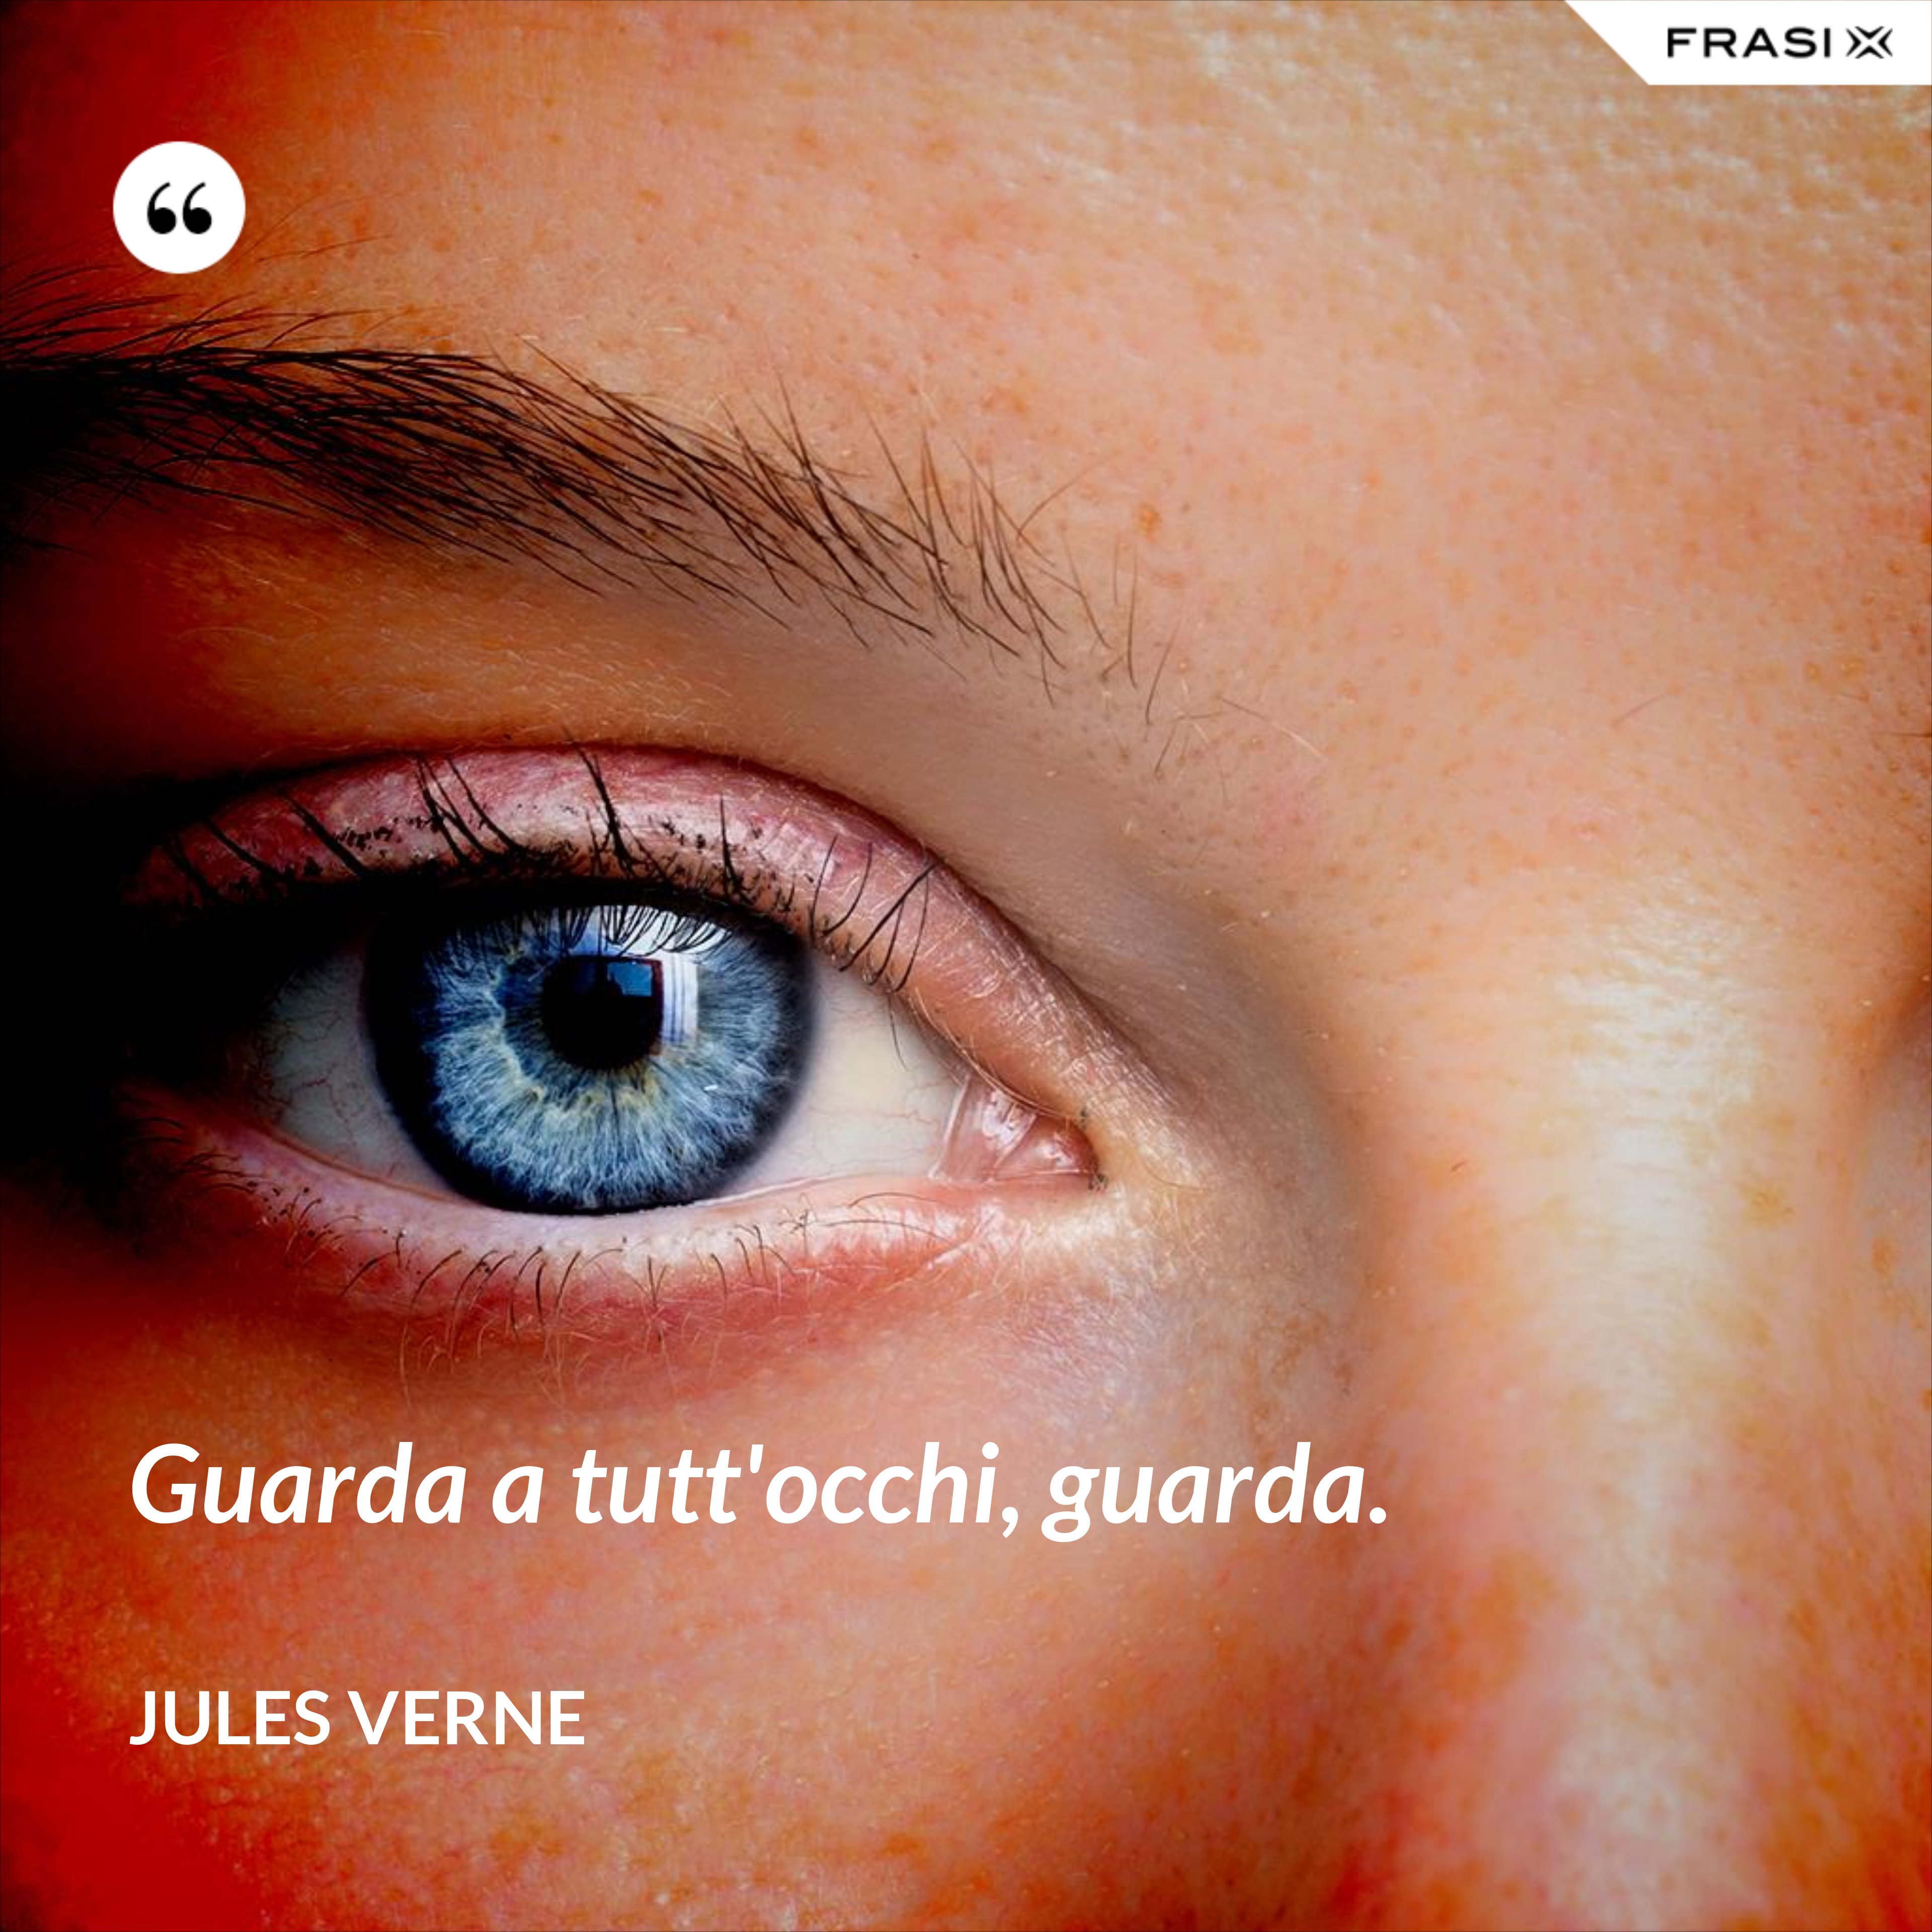 Guarda a tutt'occhi, guarda. - Jules Verne